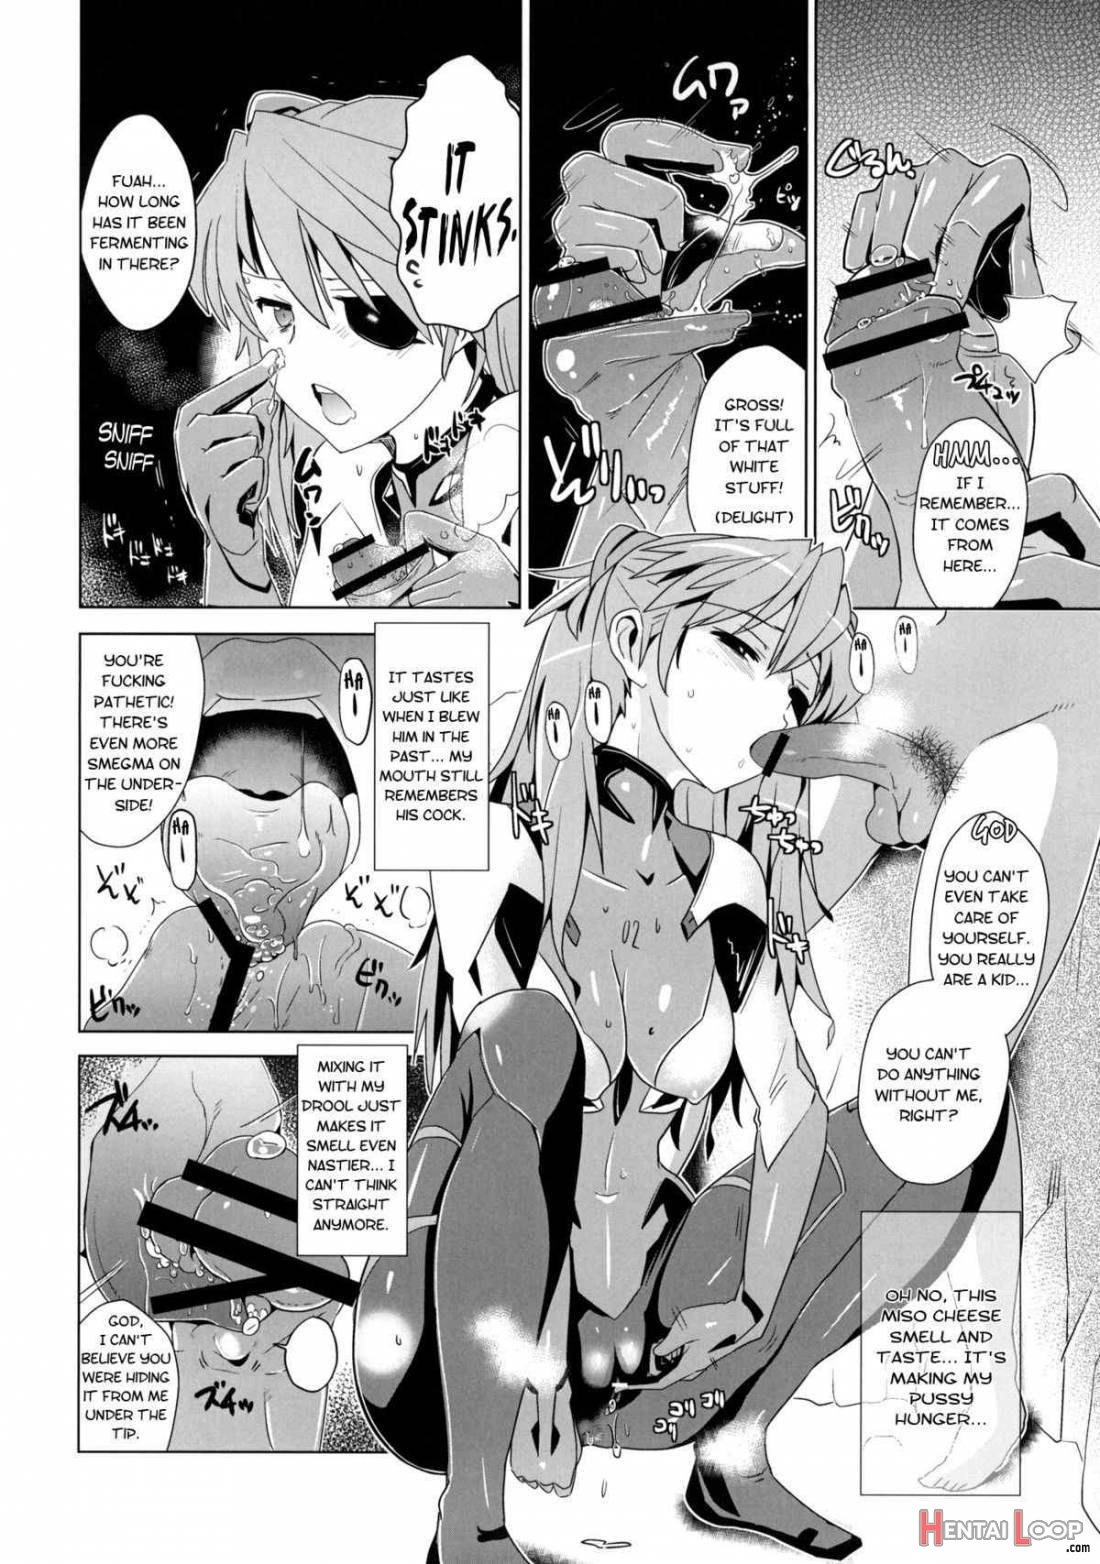 Shikinami Gankihime page 5